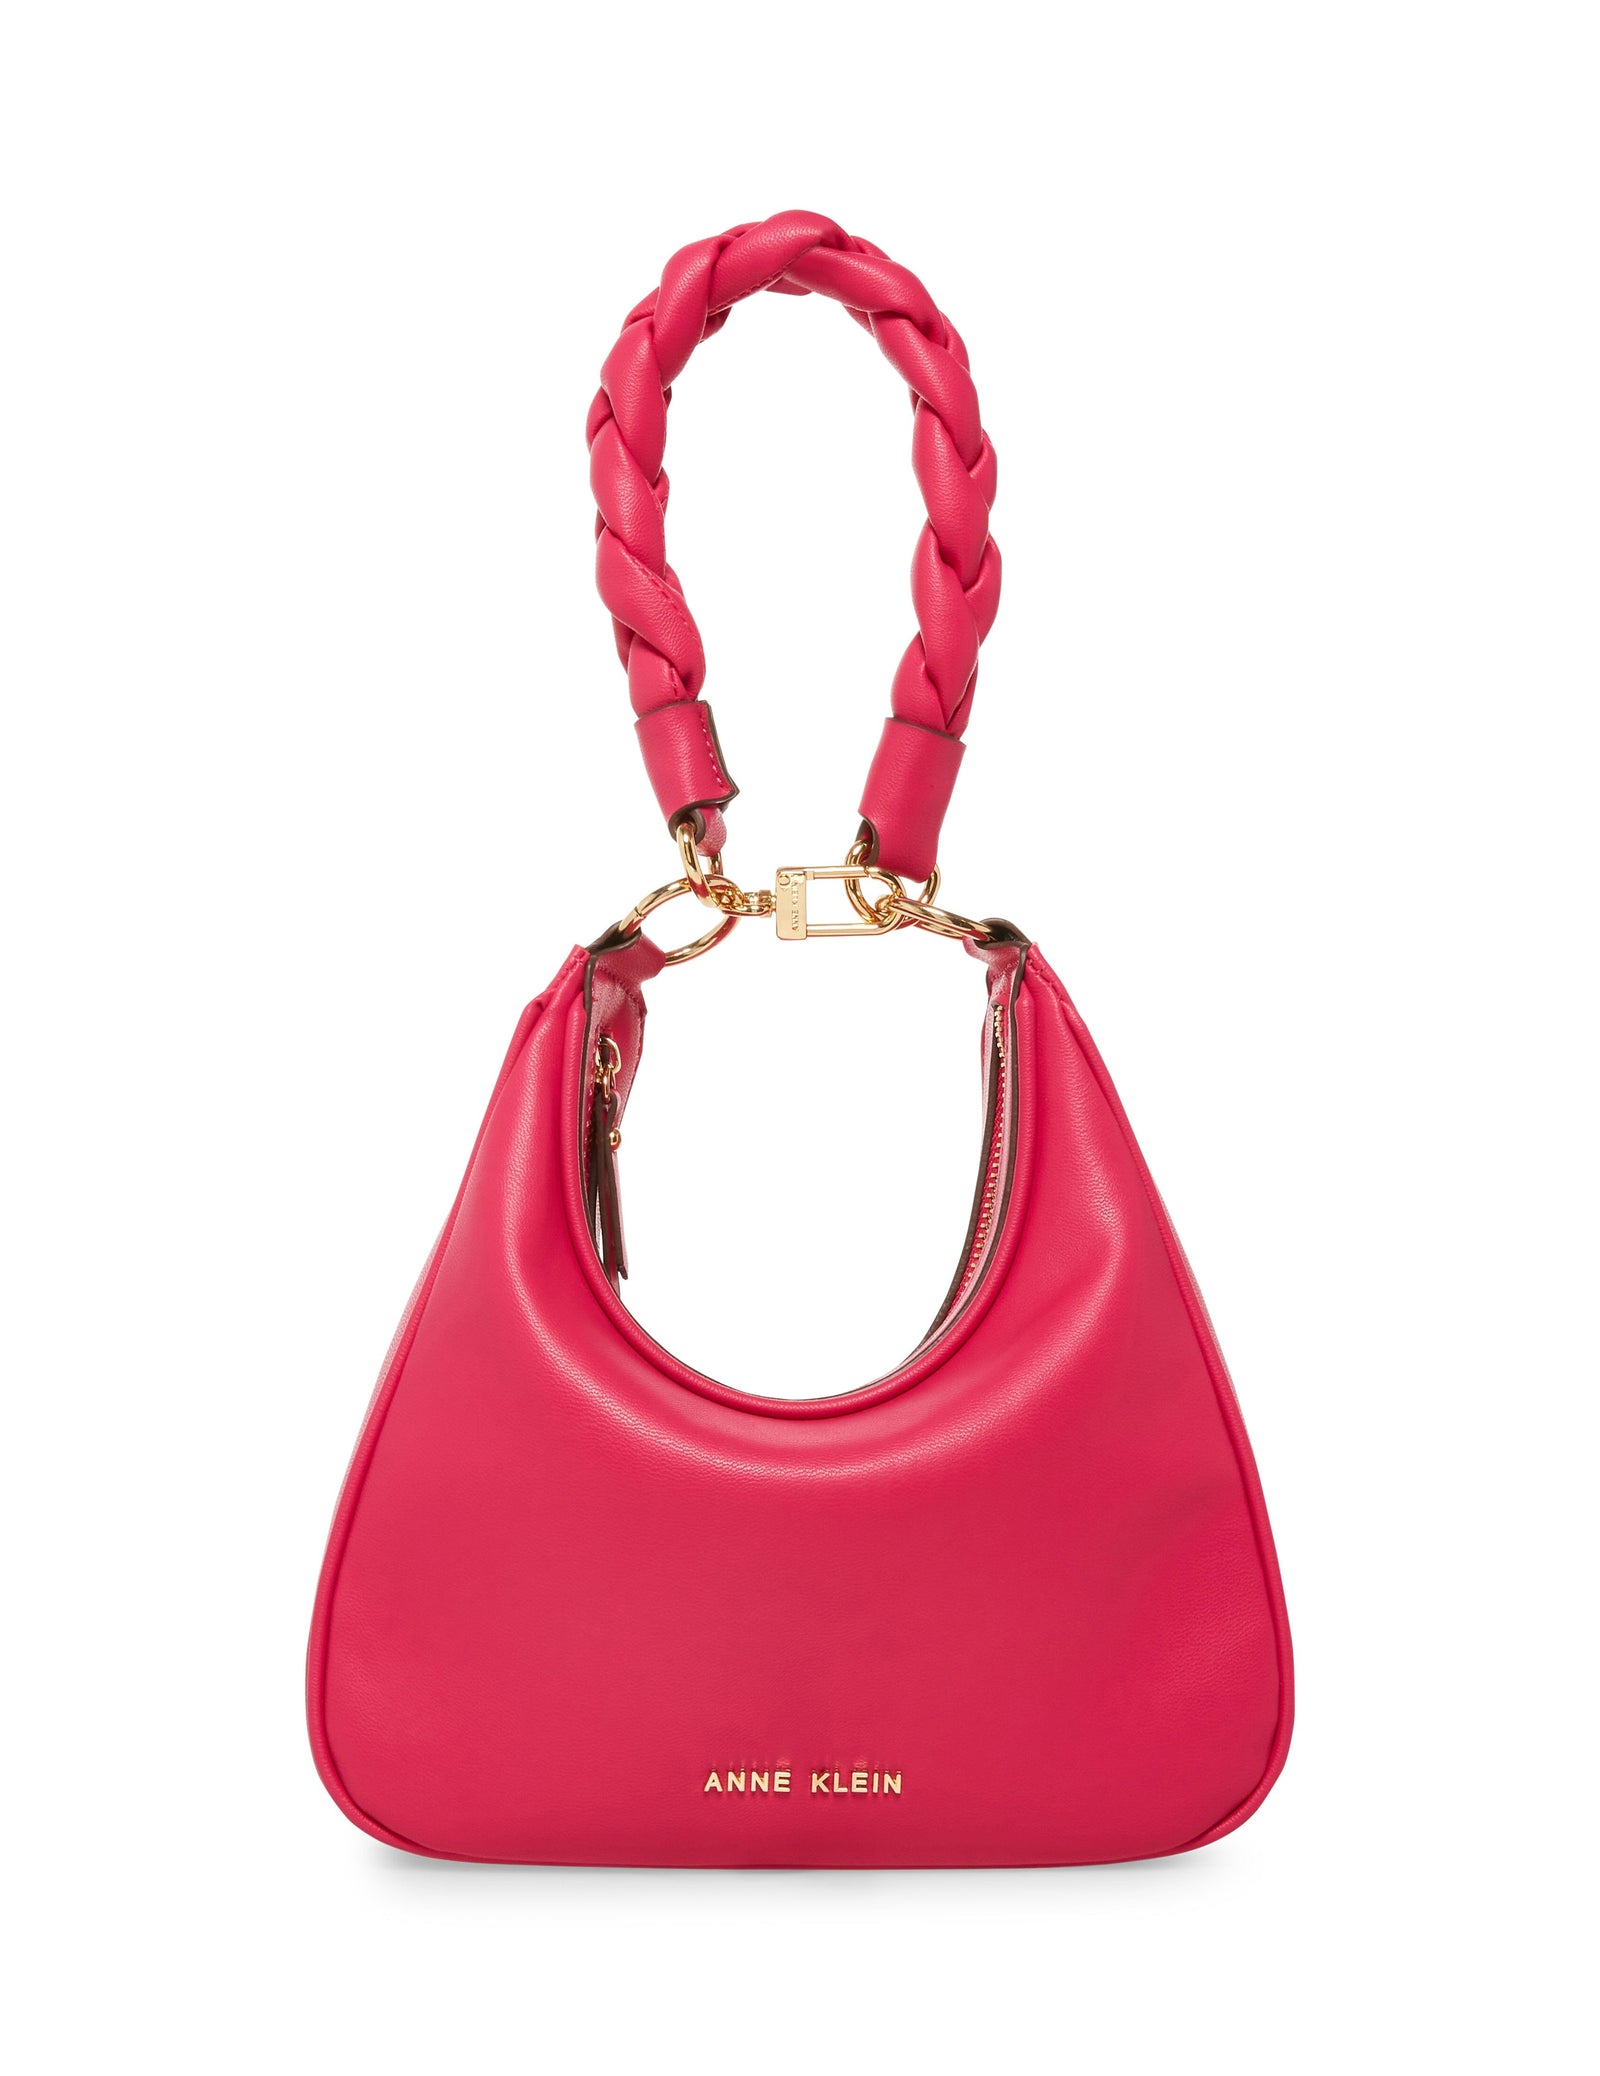 Anne Klein Anne Klein bags purse burgundy handbag with shoulder strap |  Grailed